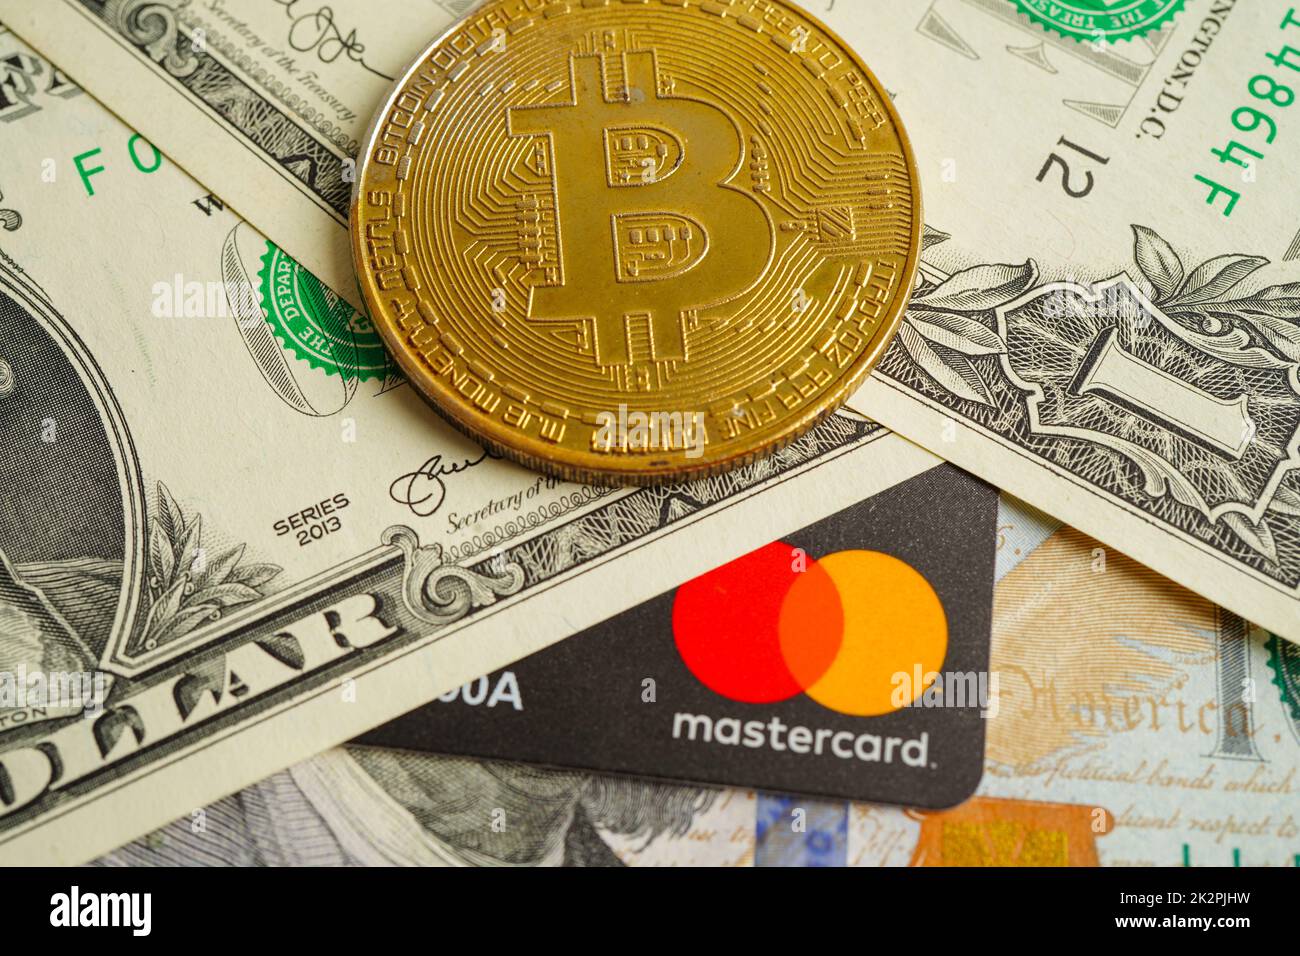 Bangkok, Thailand - 15. Dezember 2021 Goldene Bitmünze mit Kreditkarte auf US-Dollar-Banknoten Geld für Geschäfts- und Geschäftskunden, digitale Währung, virtuelle Kryptowährung. Stockfoto